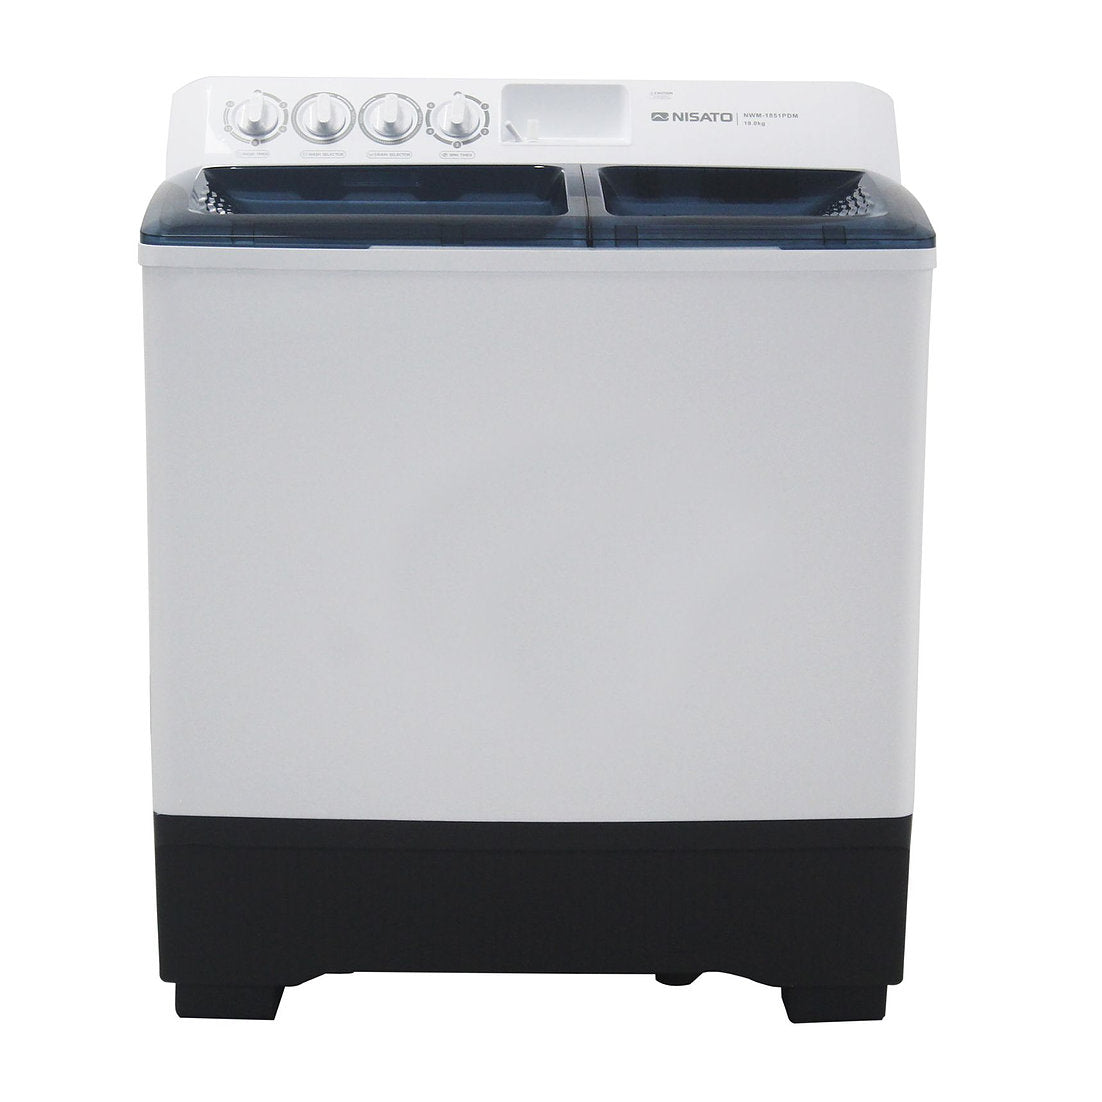 Lavadora Semi Automática Color Blanco Con Capacidad De Carga De 14 KG Marca Nisato